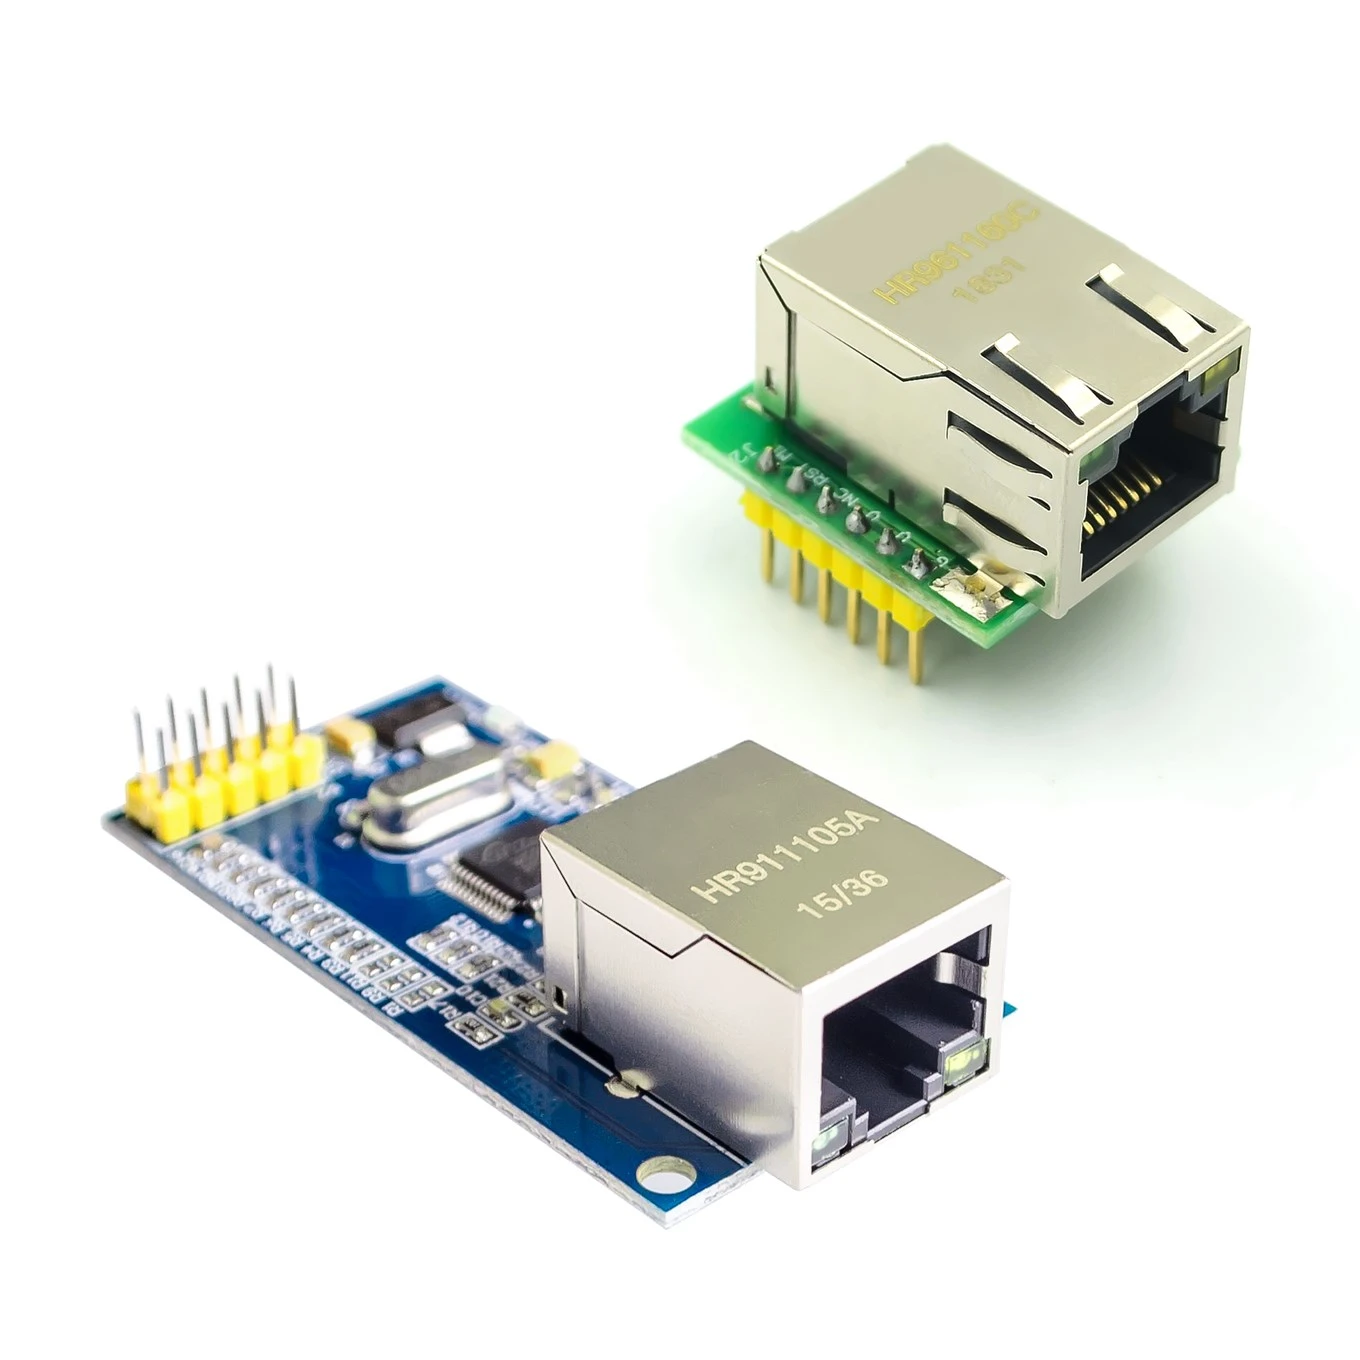 USR-ES1 W5500 Chip New SPI to LAN/ Ethernet Converter TCP / IP 51 / STM32 microcontroller program over W5100